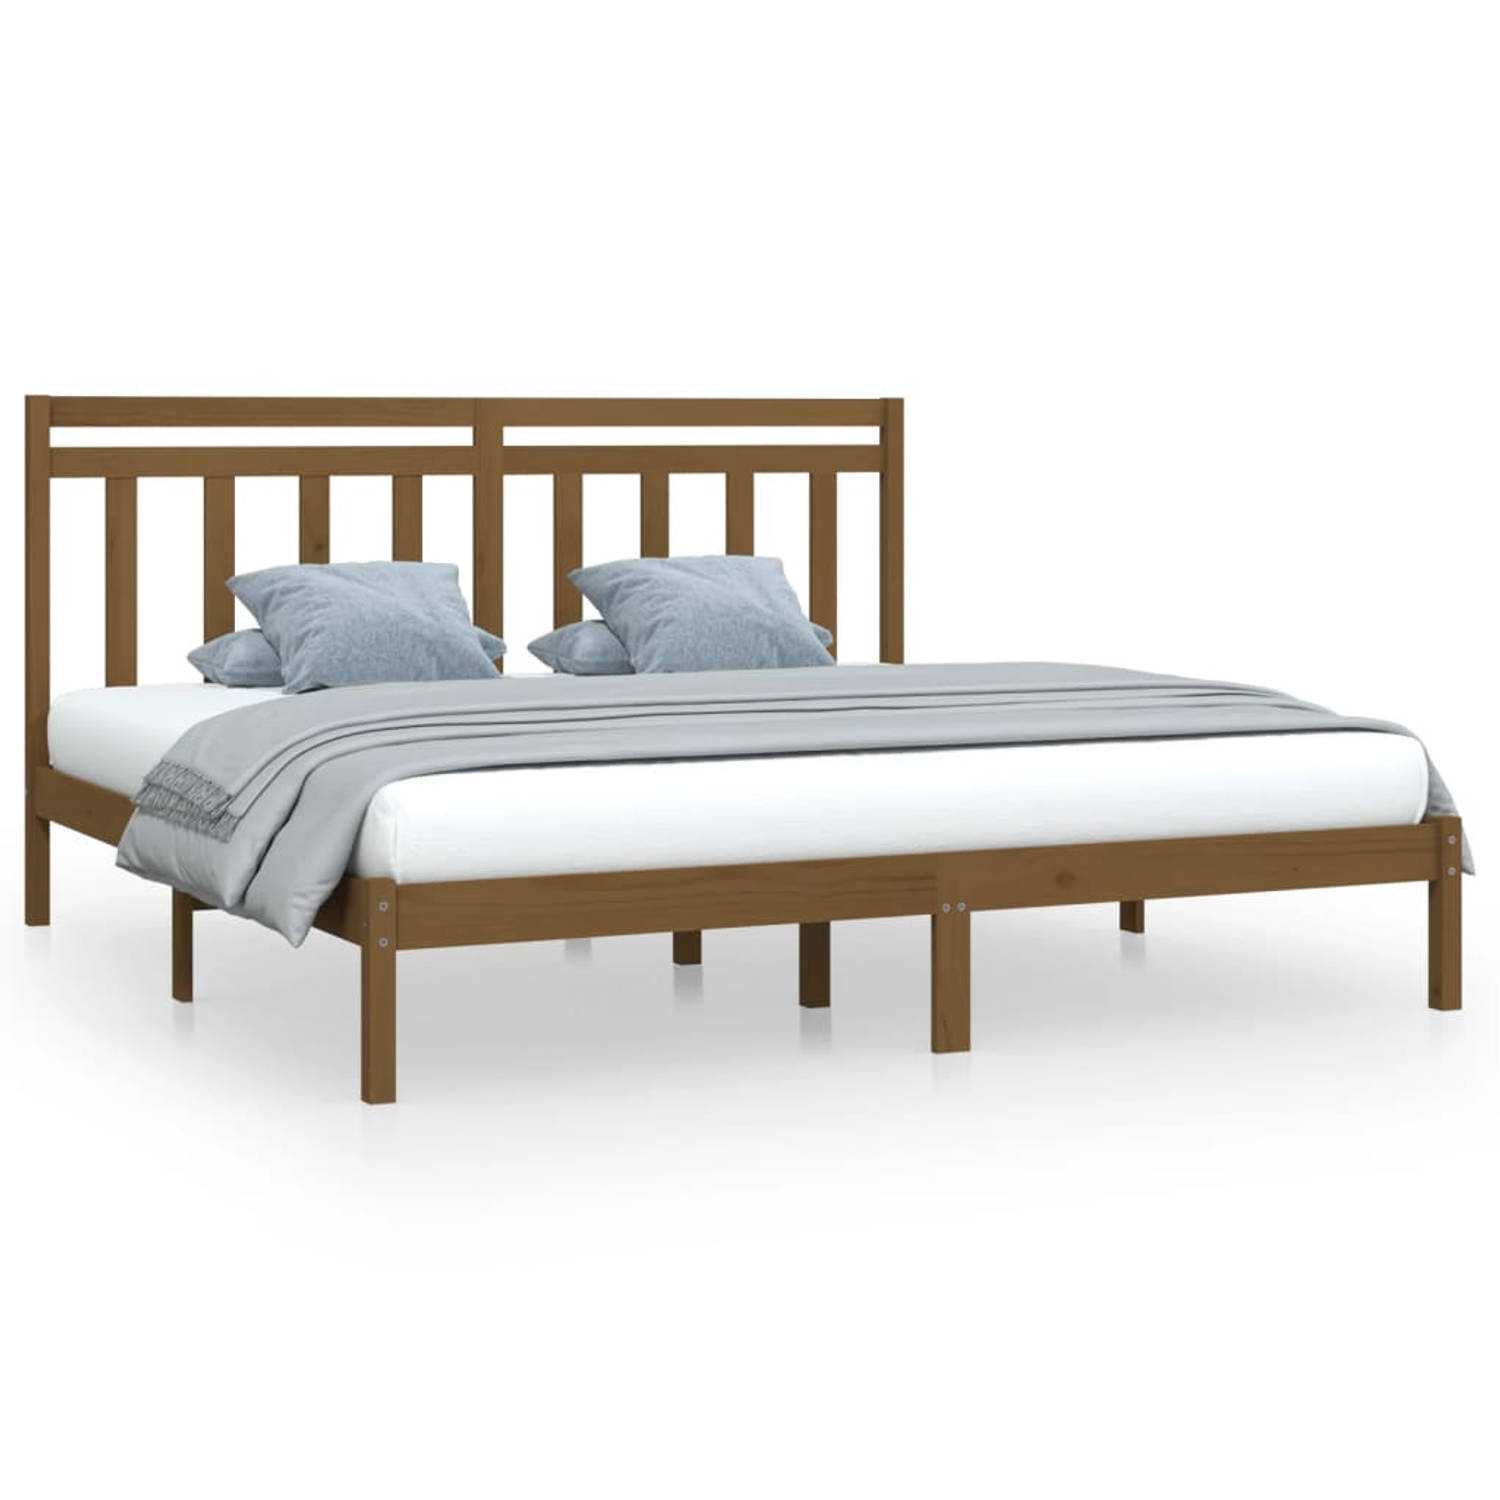 The Living Store Bedframe massief hout honingbruin 180x200 cm 6FT Super King - Bedframe - Bedframes - Tweepersoonsbed - Bed - Bedombouw - Dubbel Bed - Frame - Bed Frame - Ledikant